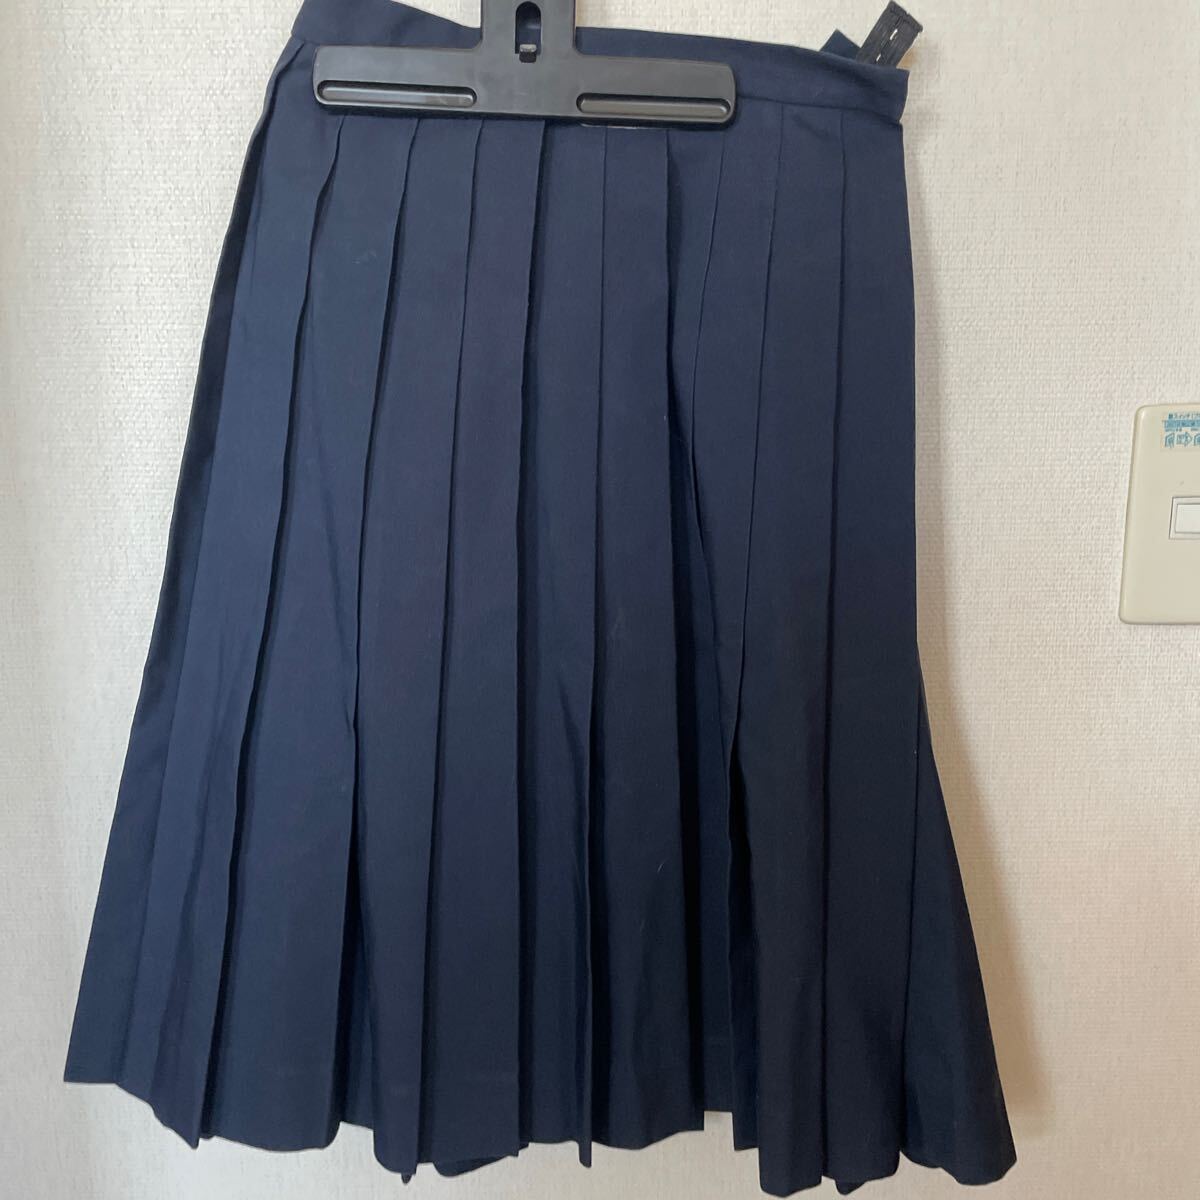 制服スカート シンプル 紺プリーツスカート フリーサイズ タイ バンコク日本人中学校 女児制服の画像1